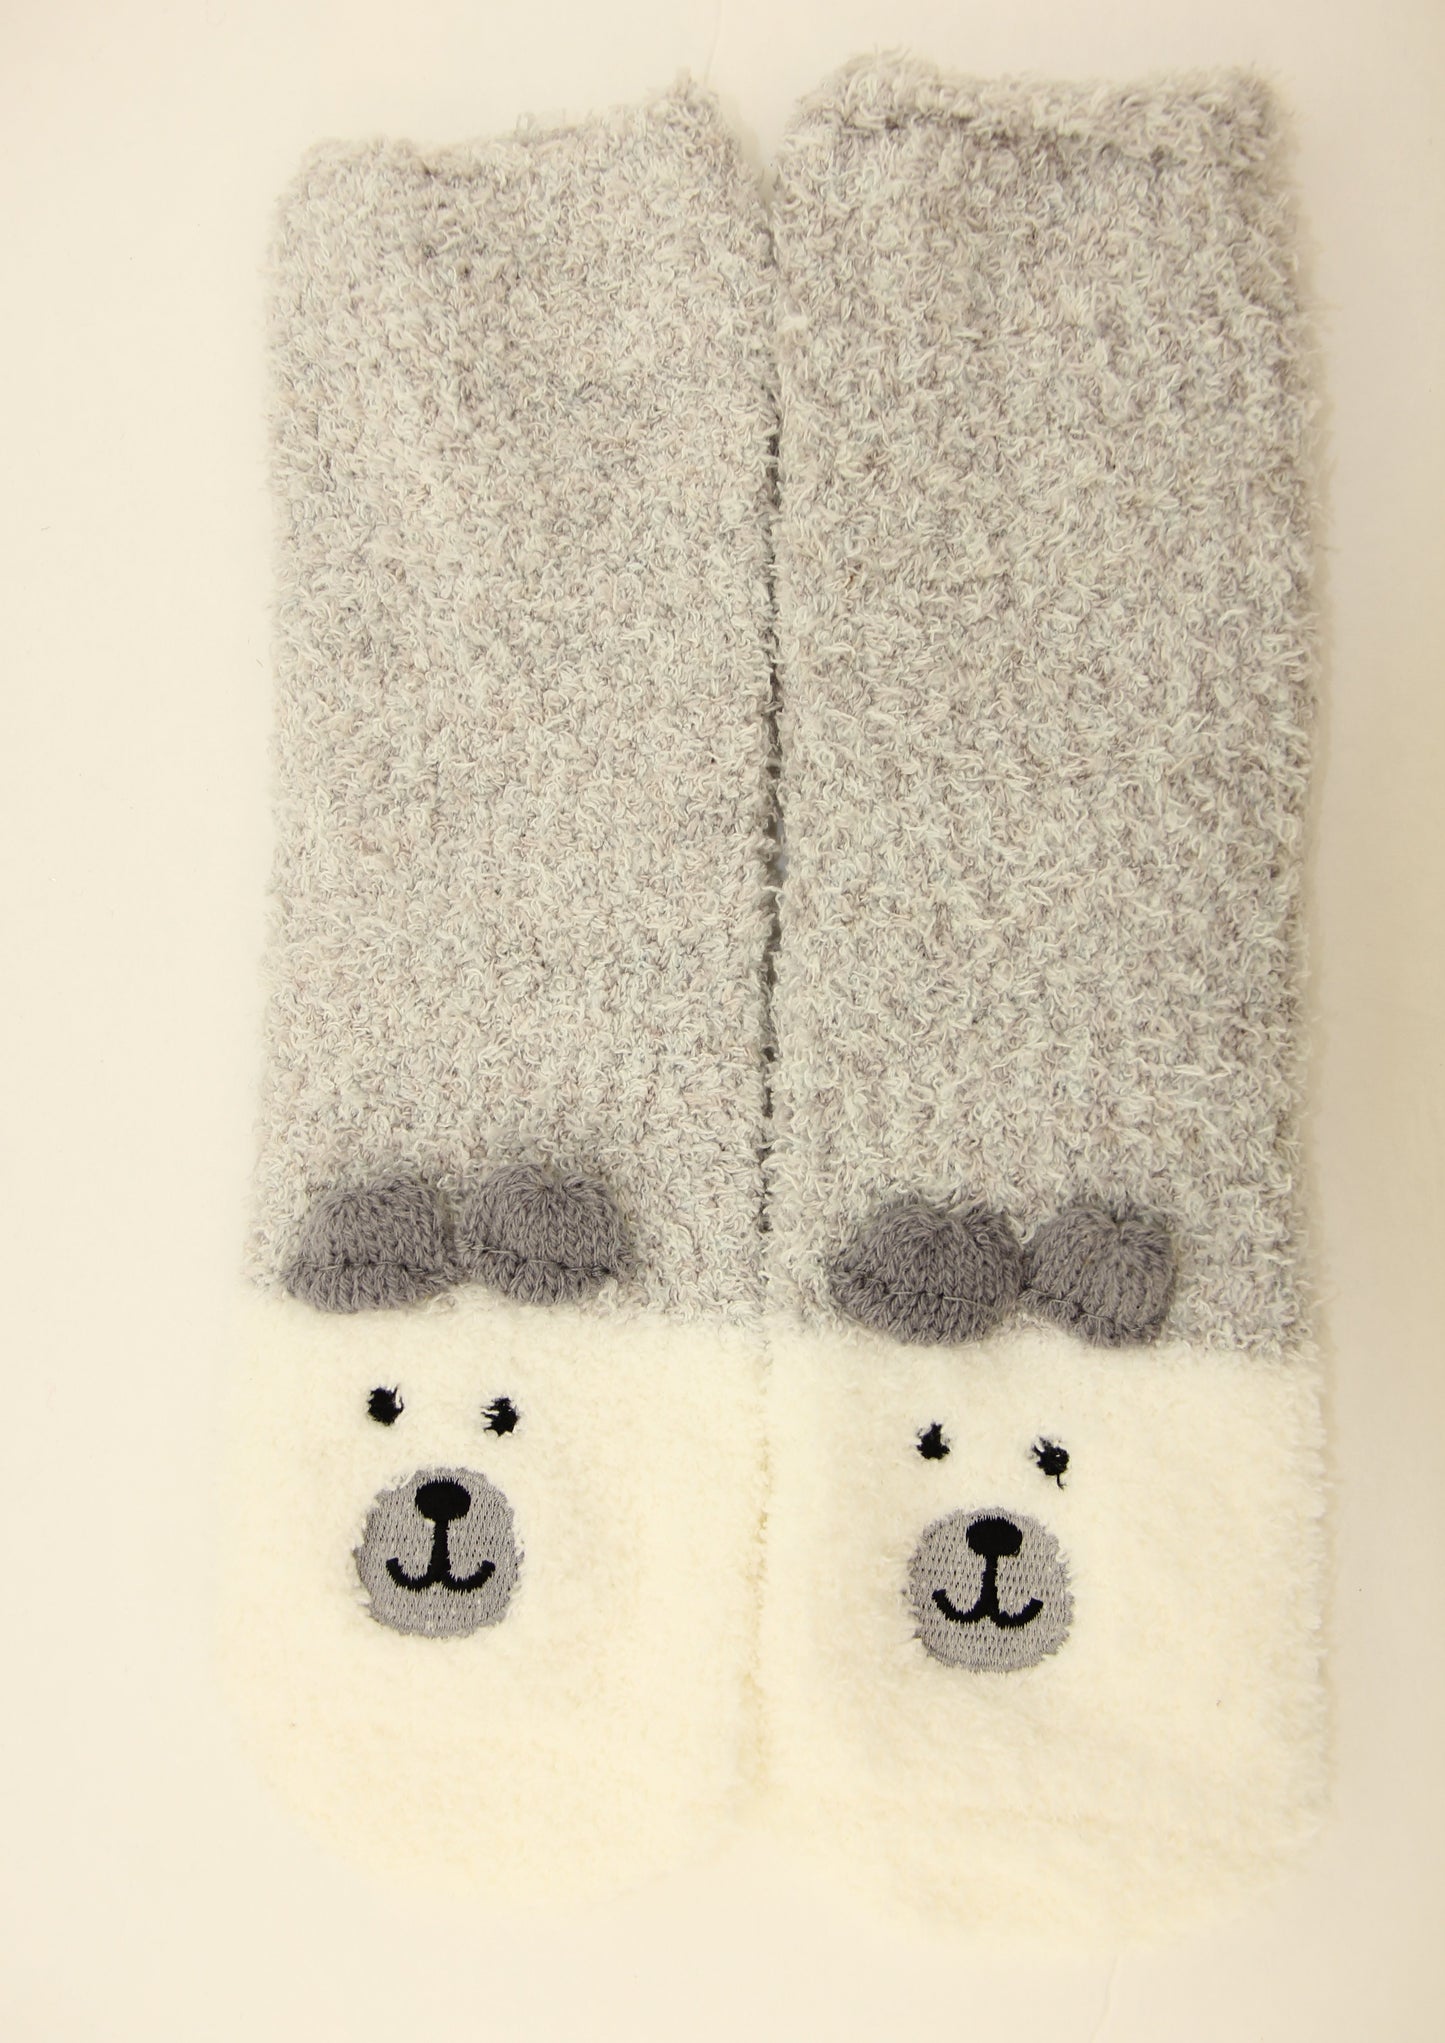 Polar Bear Socks in a Box